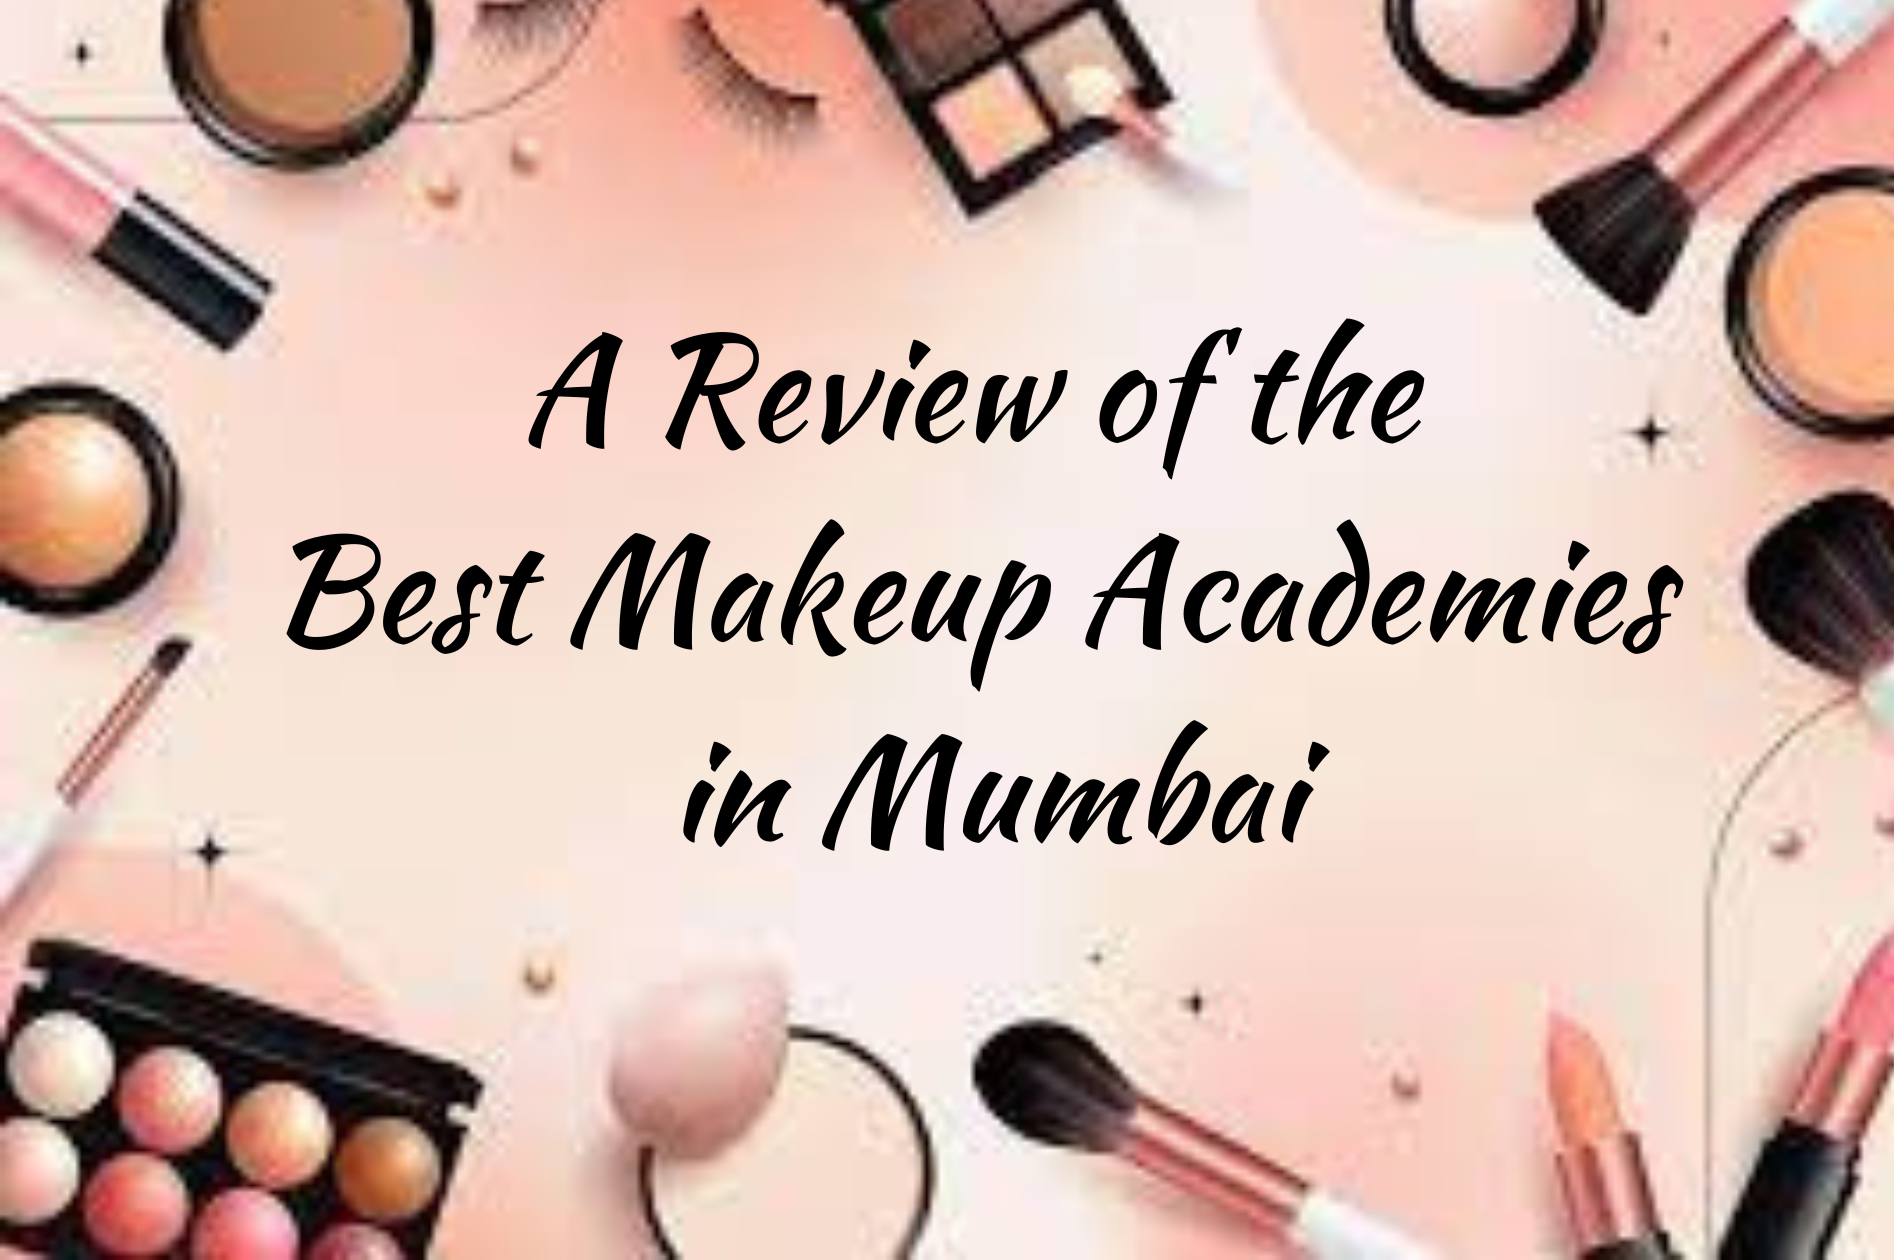 Makeup Academy in Mumbai